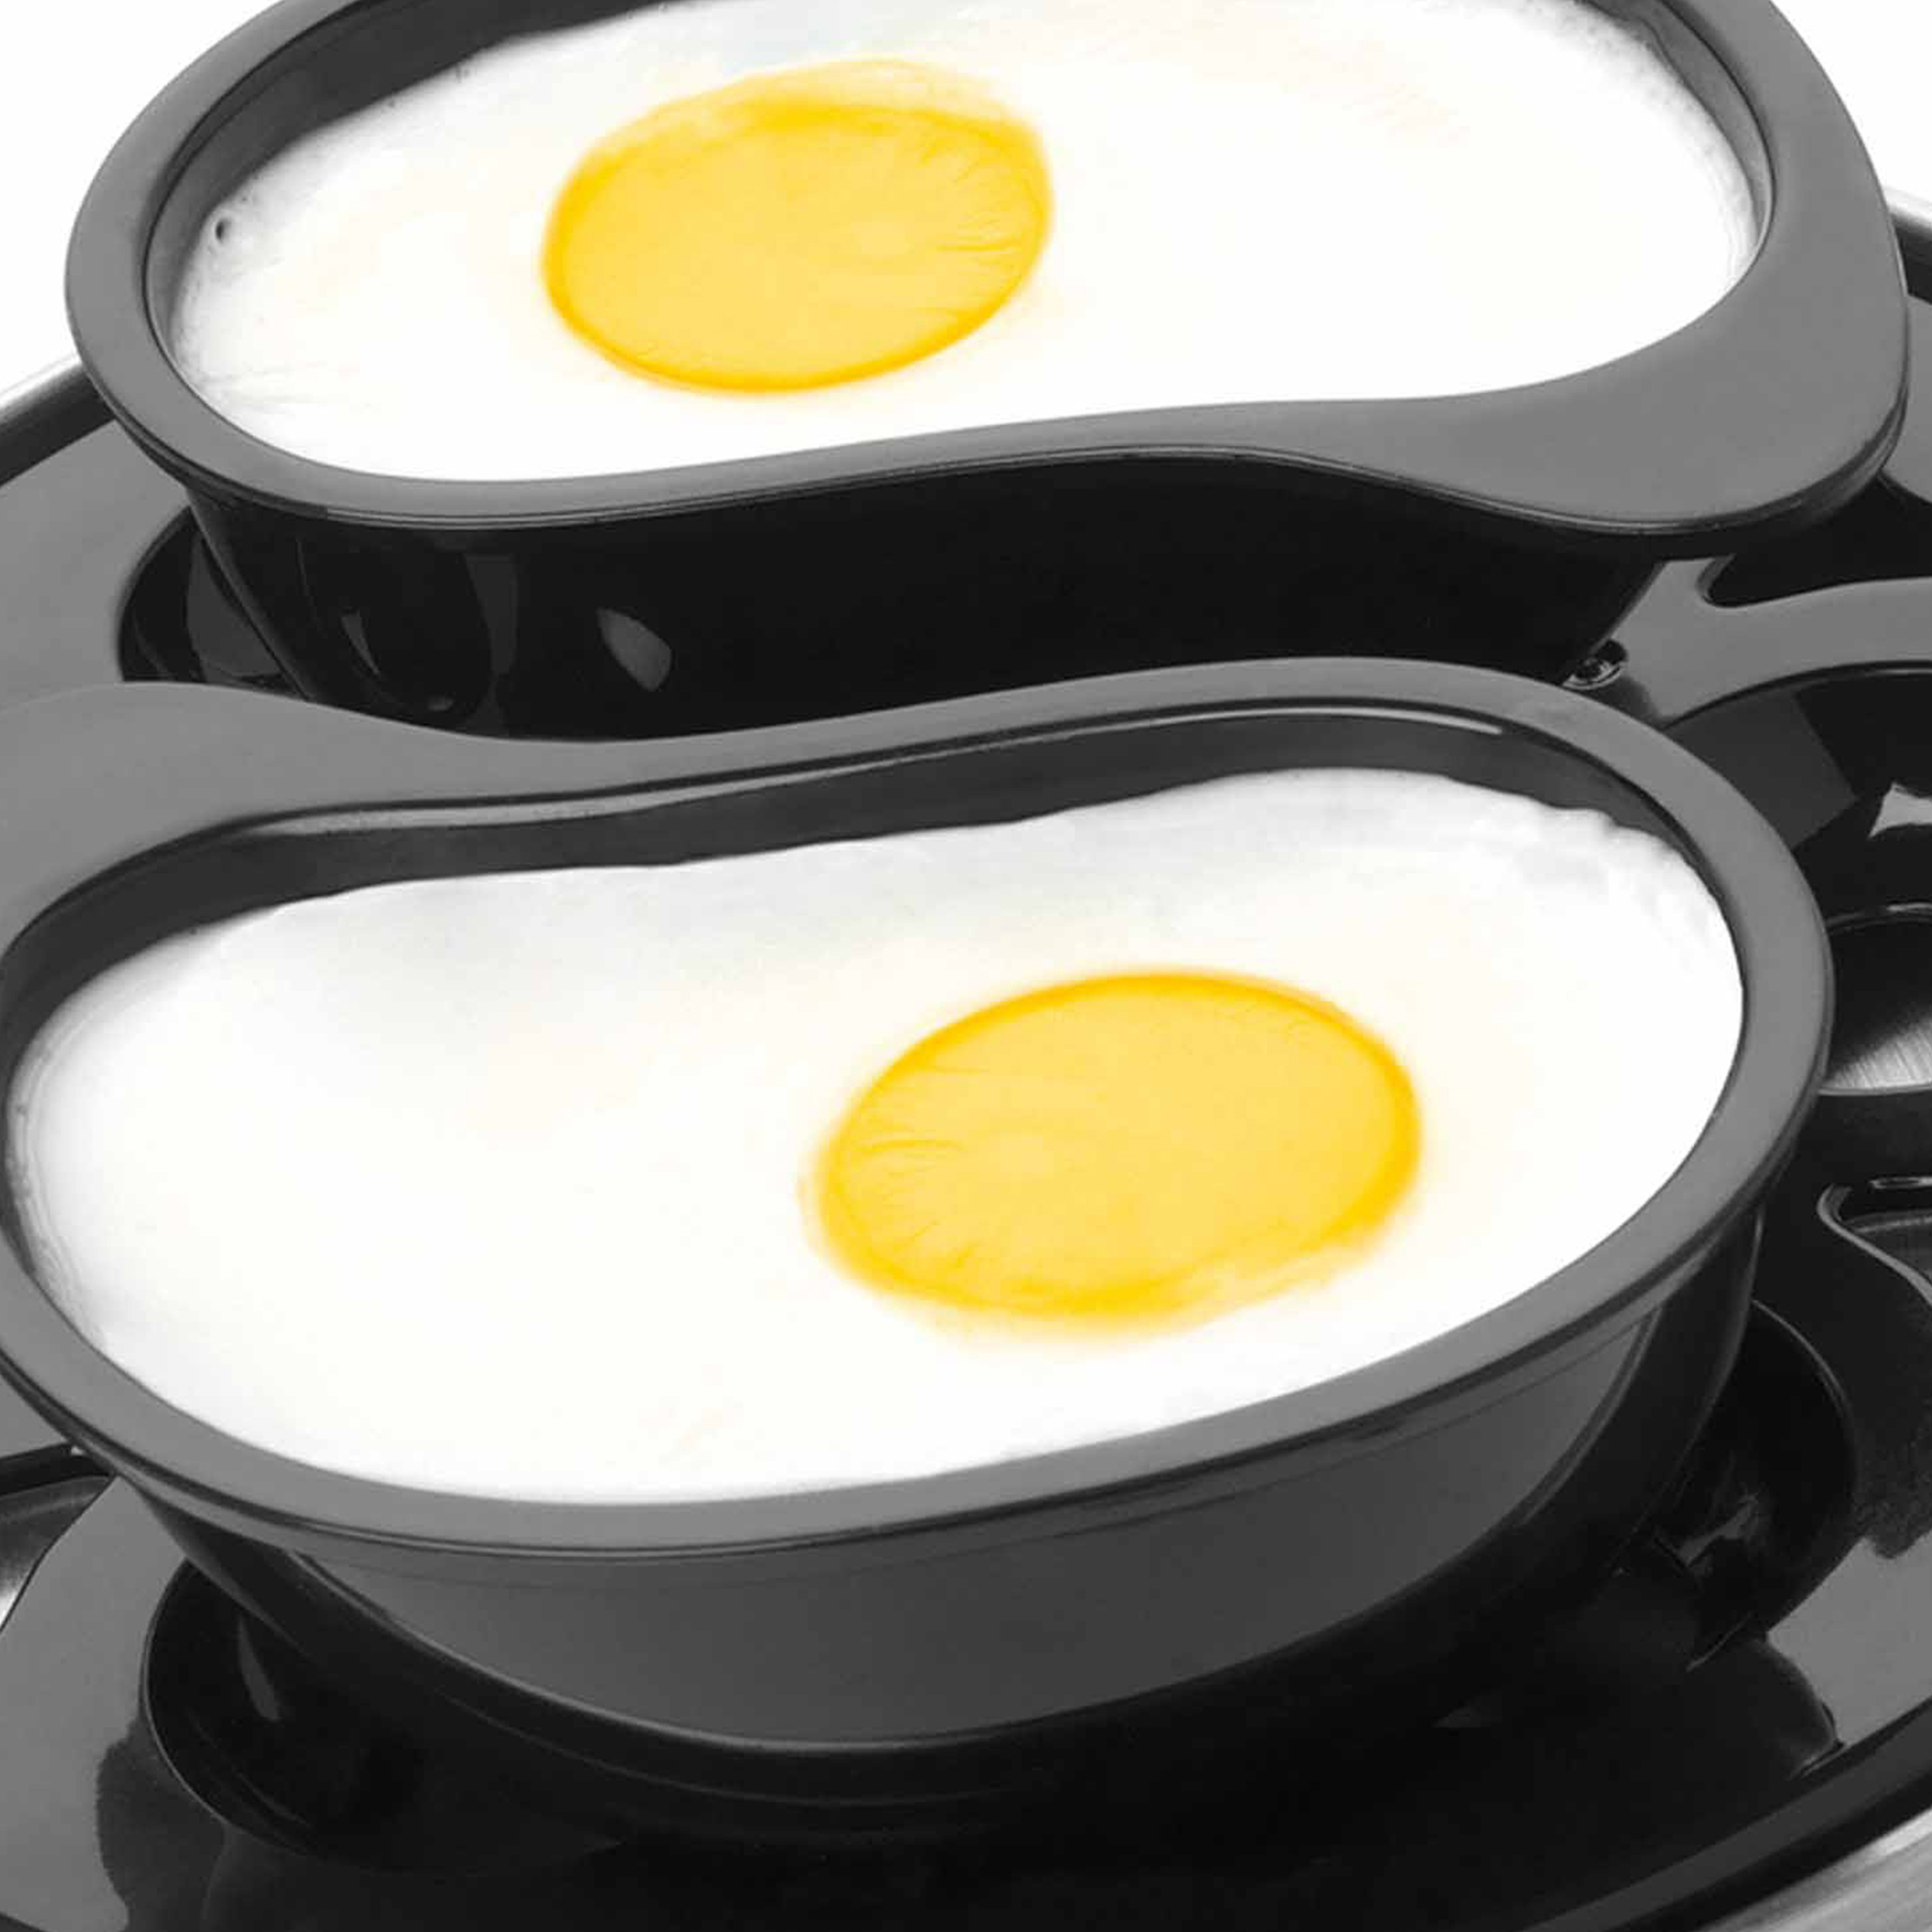 PETRA Elektrischer Pochieren, Eier: Eierkocher Kochen, Eierkocher(Anzahl für - 6 Eier - Spülmaschinenfest 6) Omelett Rührei